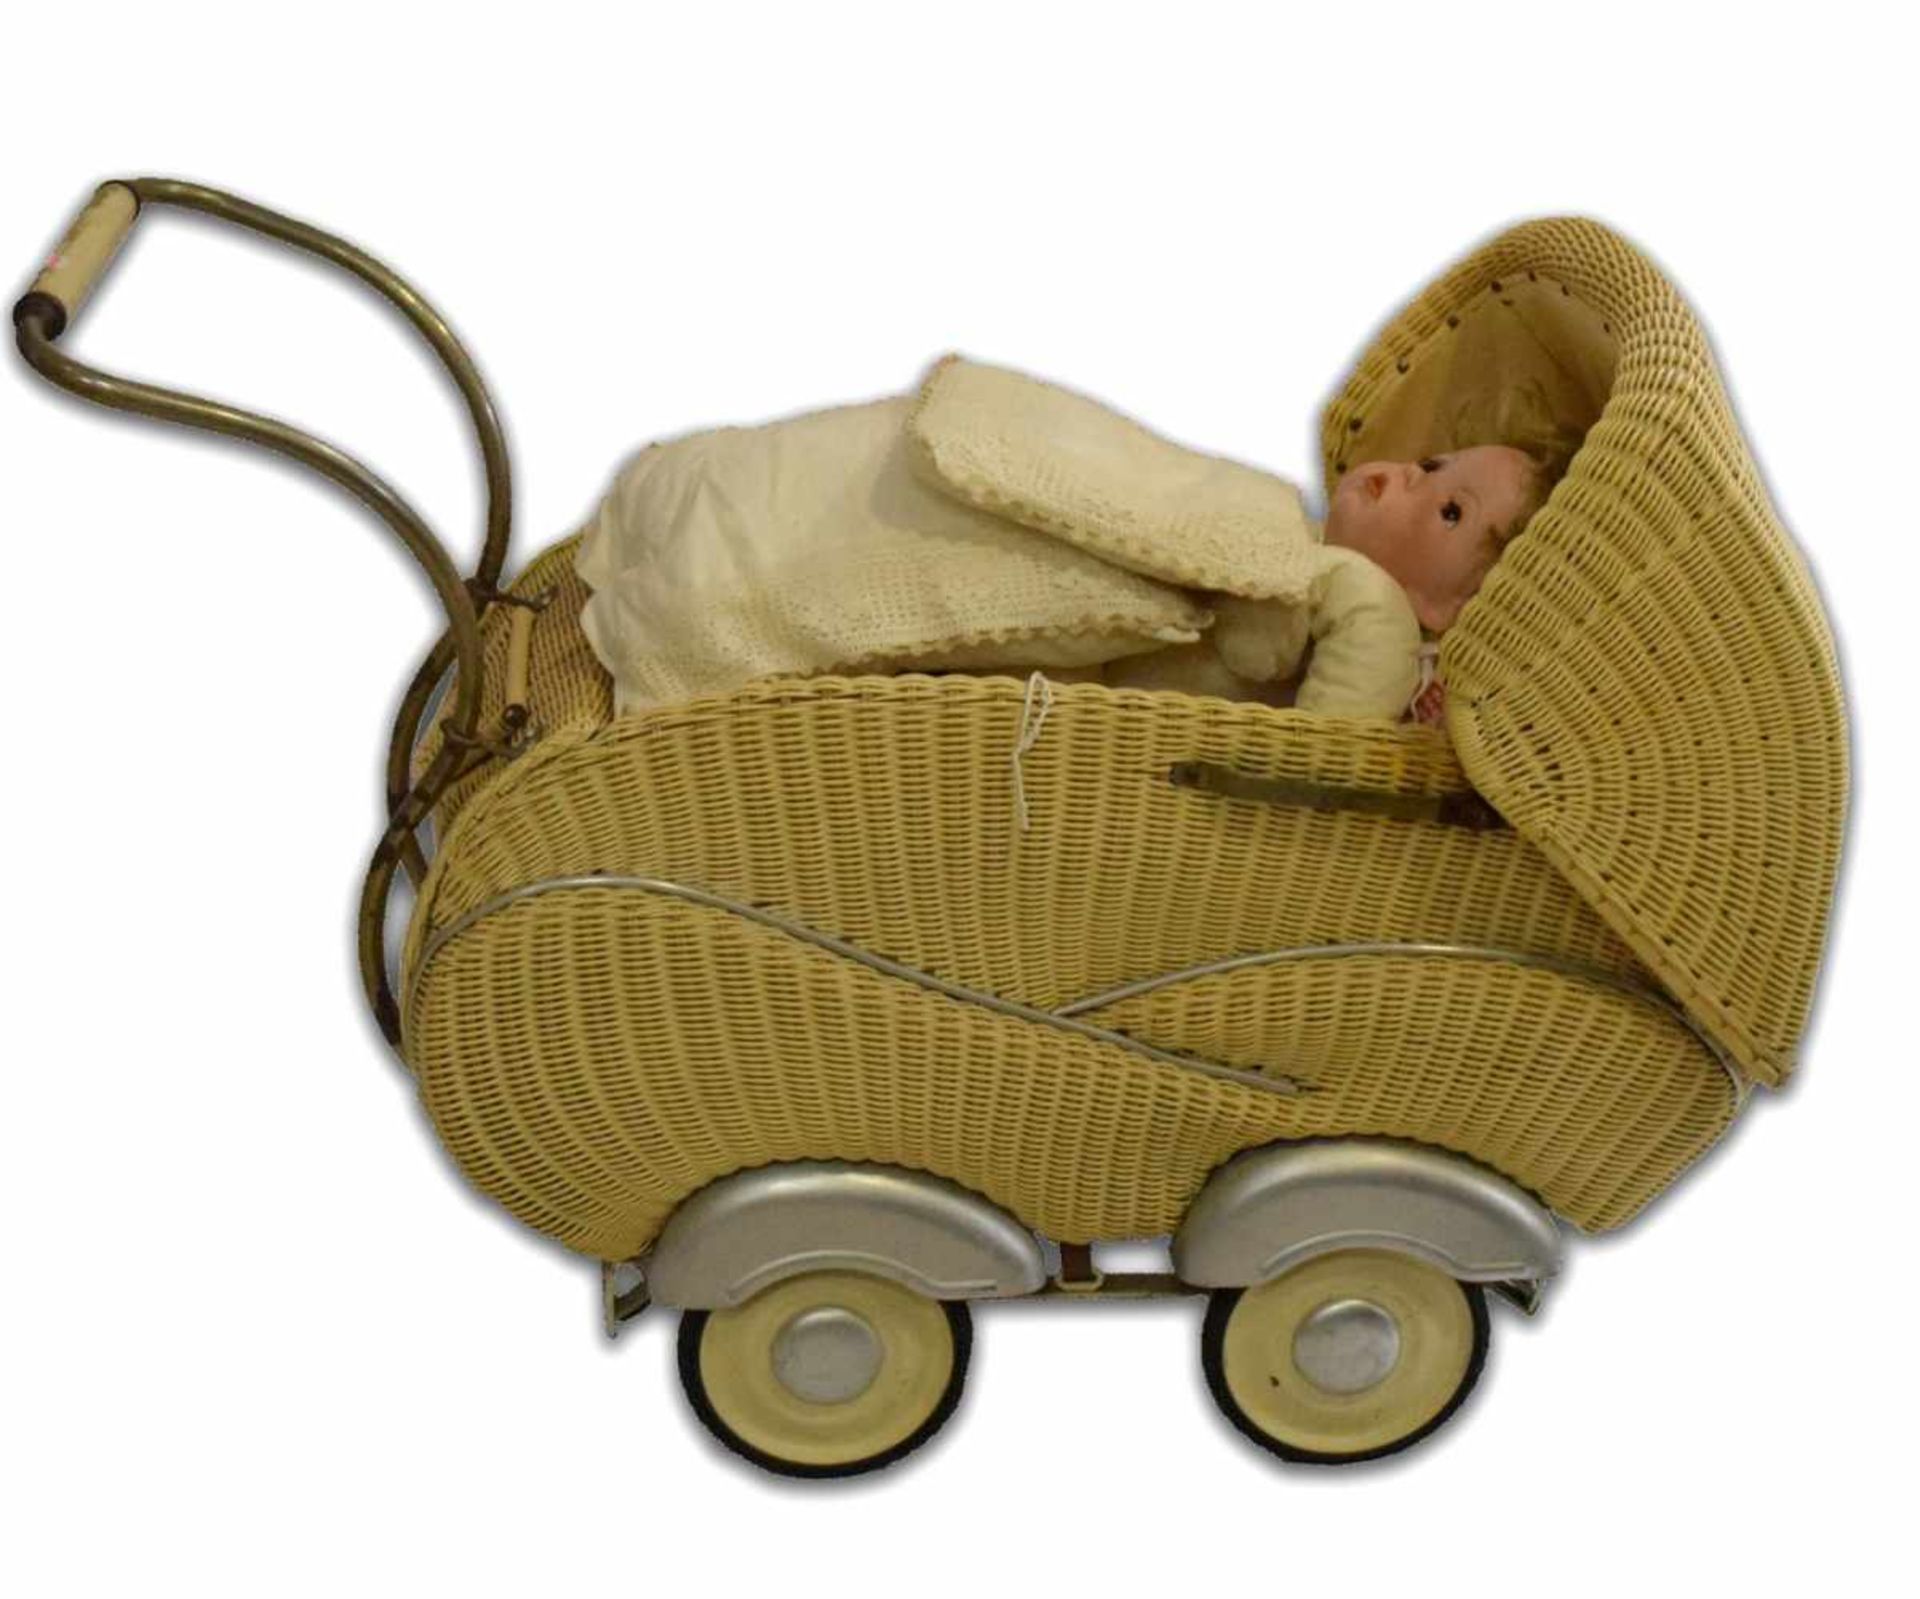 Kinderwagenmit Puppe, beigefarbener Korb, H 60 cm, L 83 cm, 50er Jahre